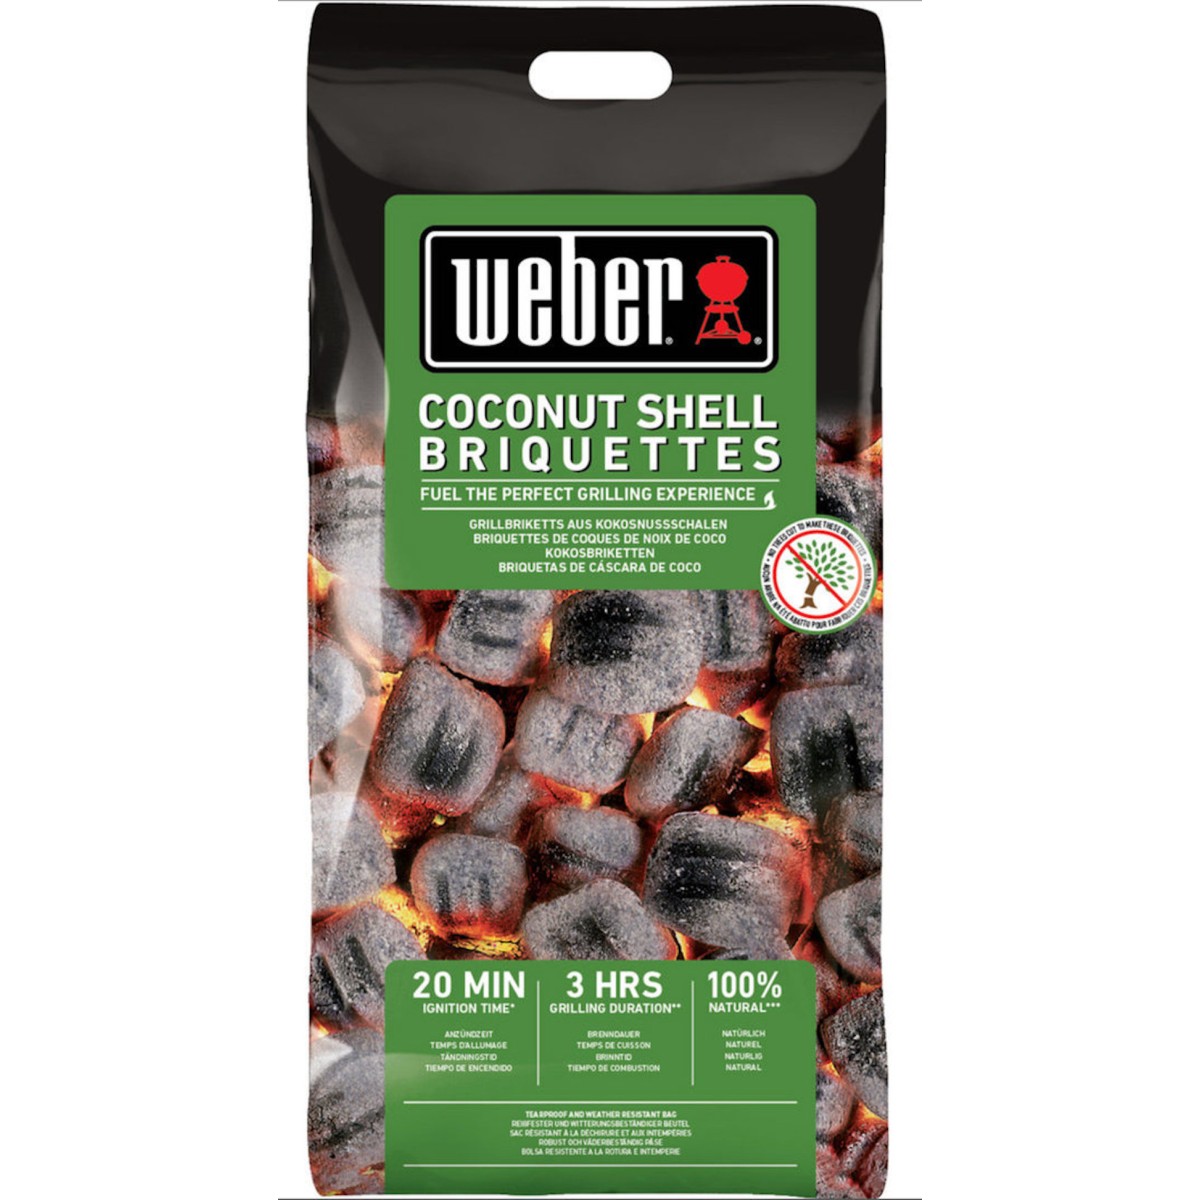 WEBER coconut shell briquettes 2kg 18450